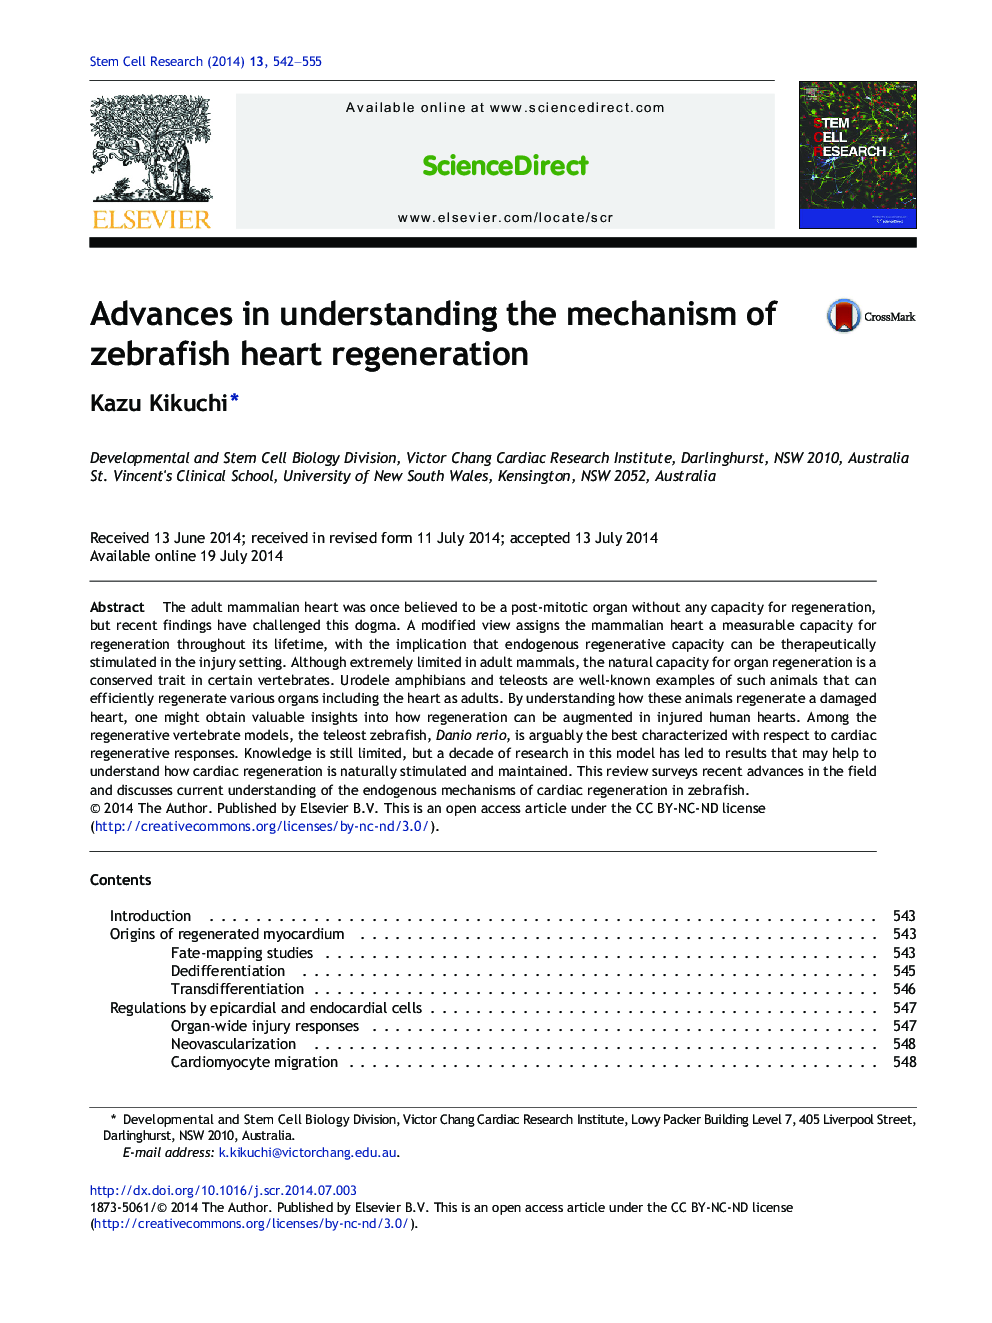 پیشرفت در درک مکانیسم بازسازی قلب زرگری 